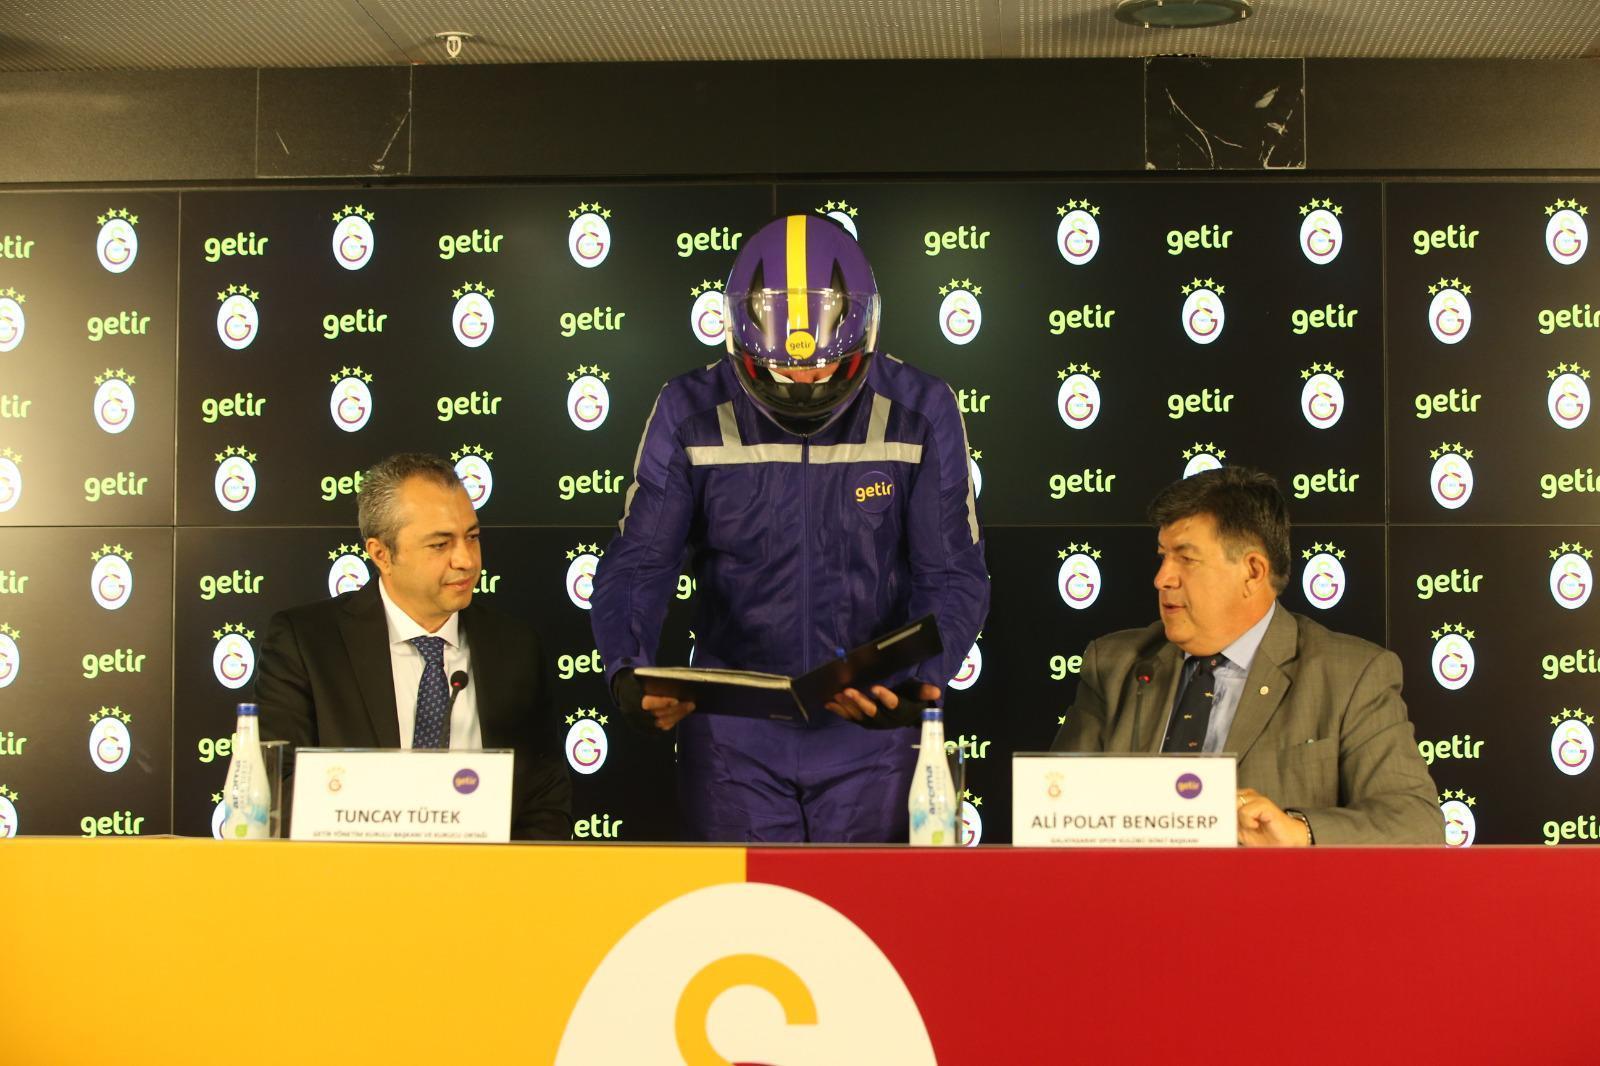 Son dakika | Galatasaray ile Getir arasındaki sponsorluk anlaşması imzalandı